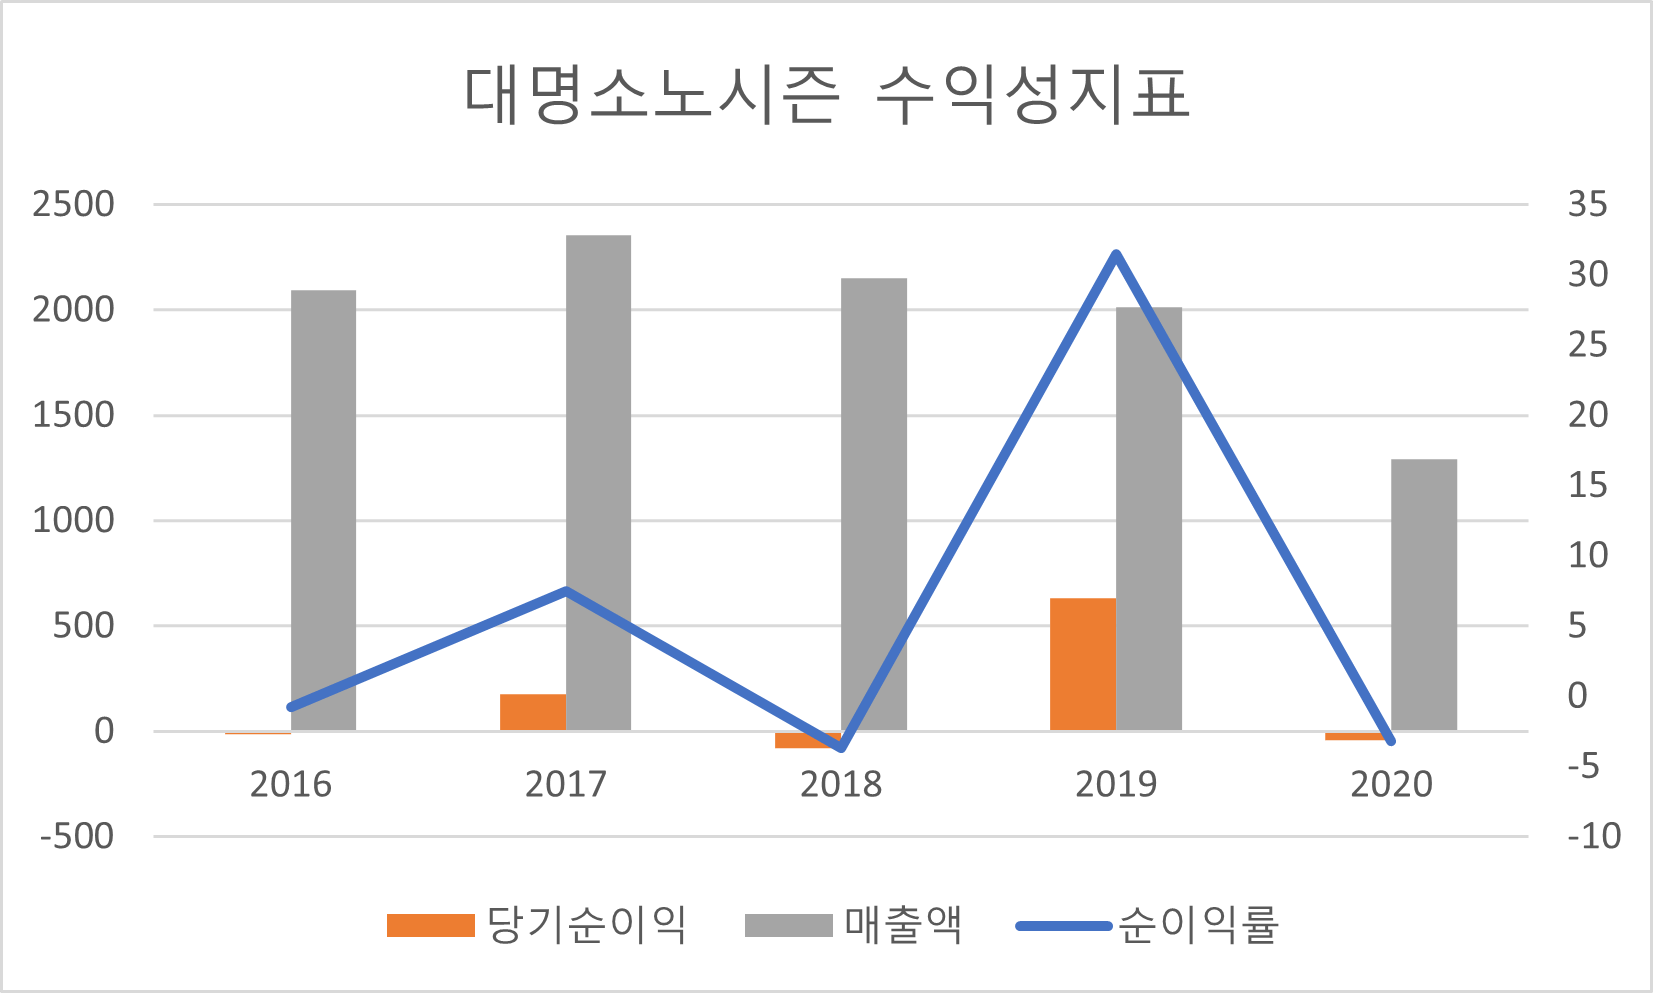 대명소노시즌 수익성지표